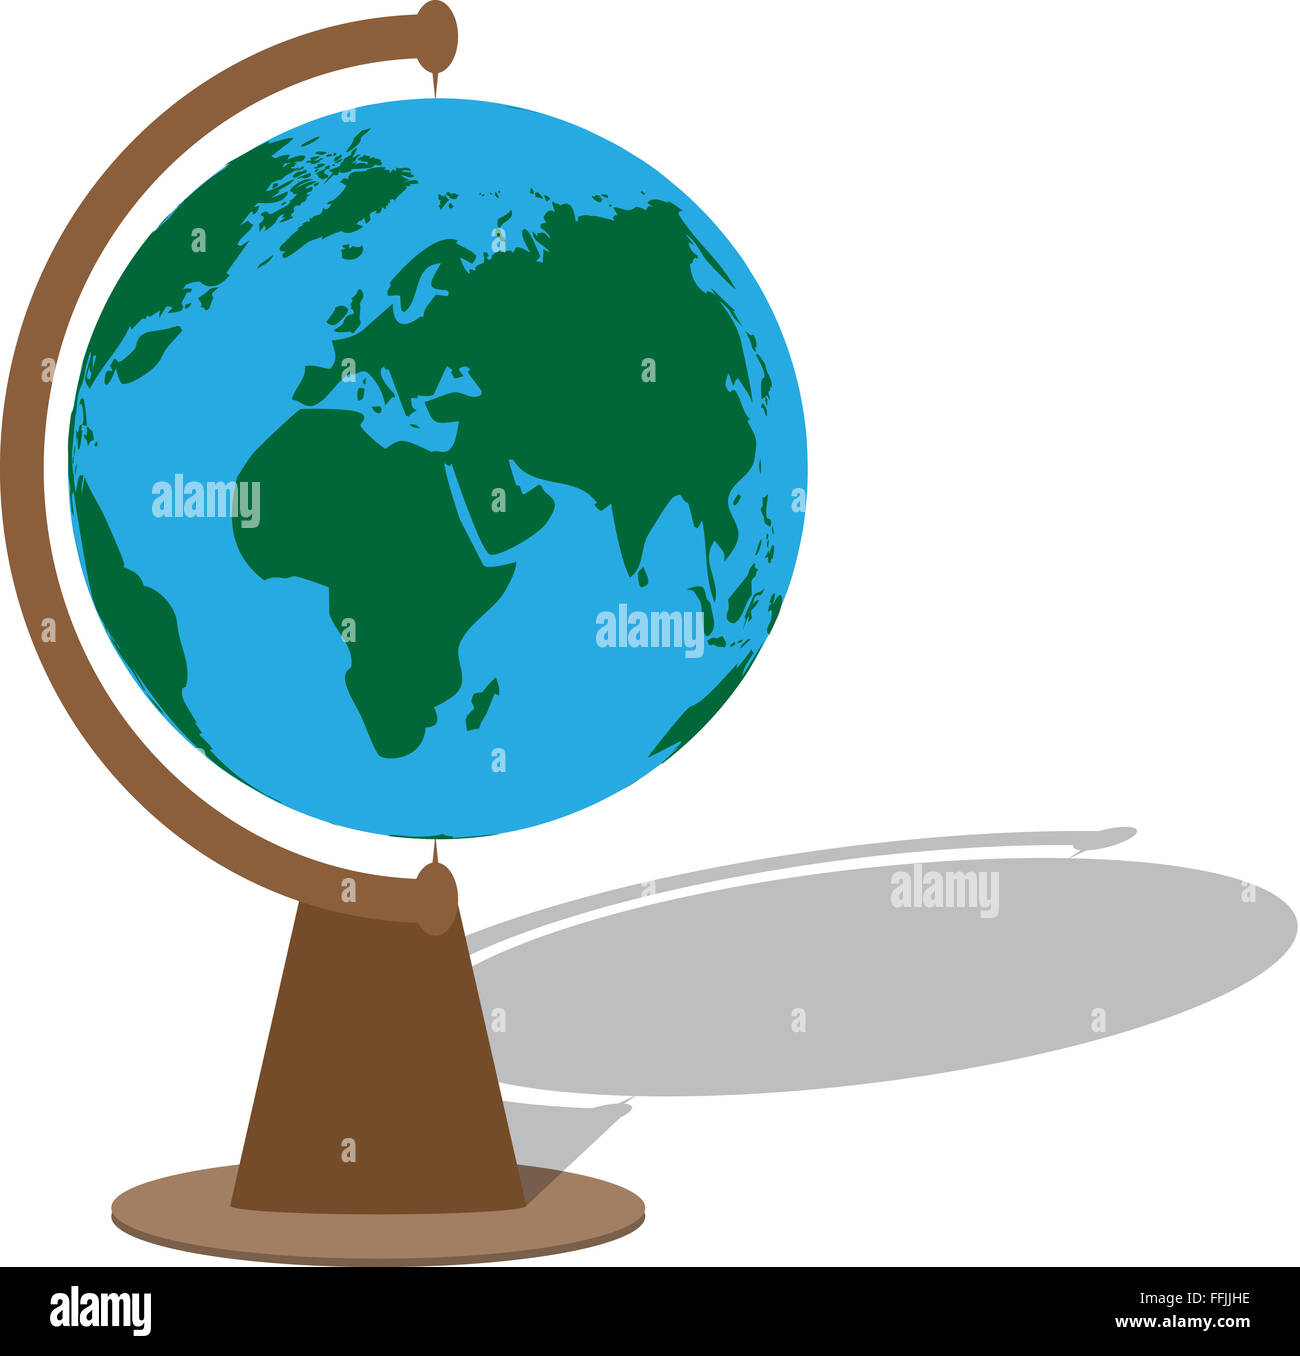 Globus mit Schatten. Kugel-Planet, Kugel Kugel, Erde, Karte-Geographie. Vektor-abstrakte flaches Design-illustration Stockfoto